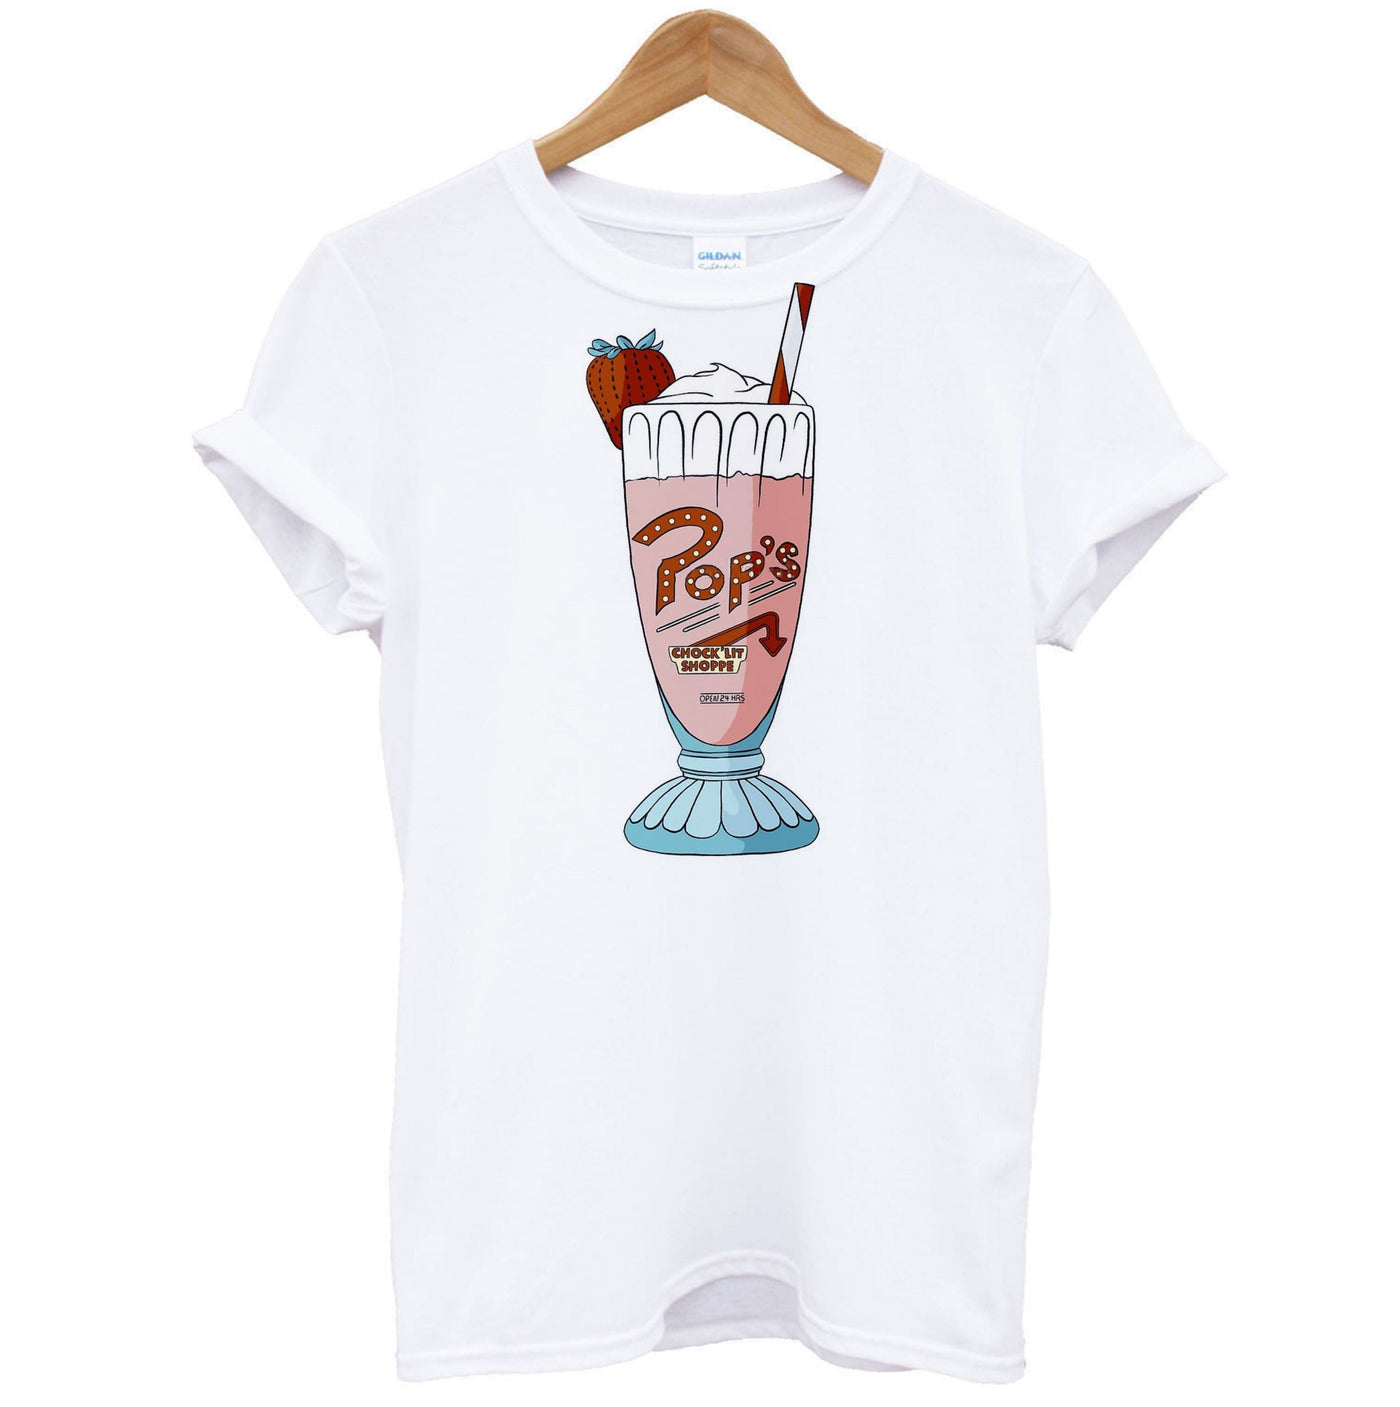 Pop's Chock'lit Shoppe Milkshake - Riverdale T-Shirt